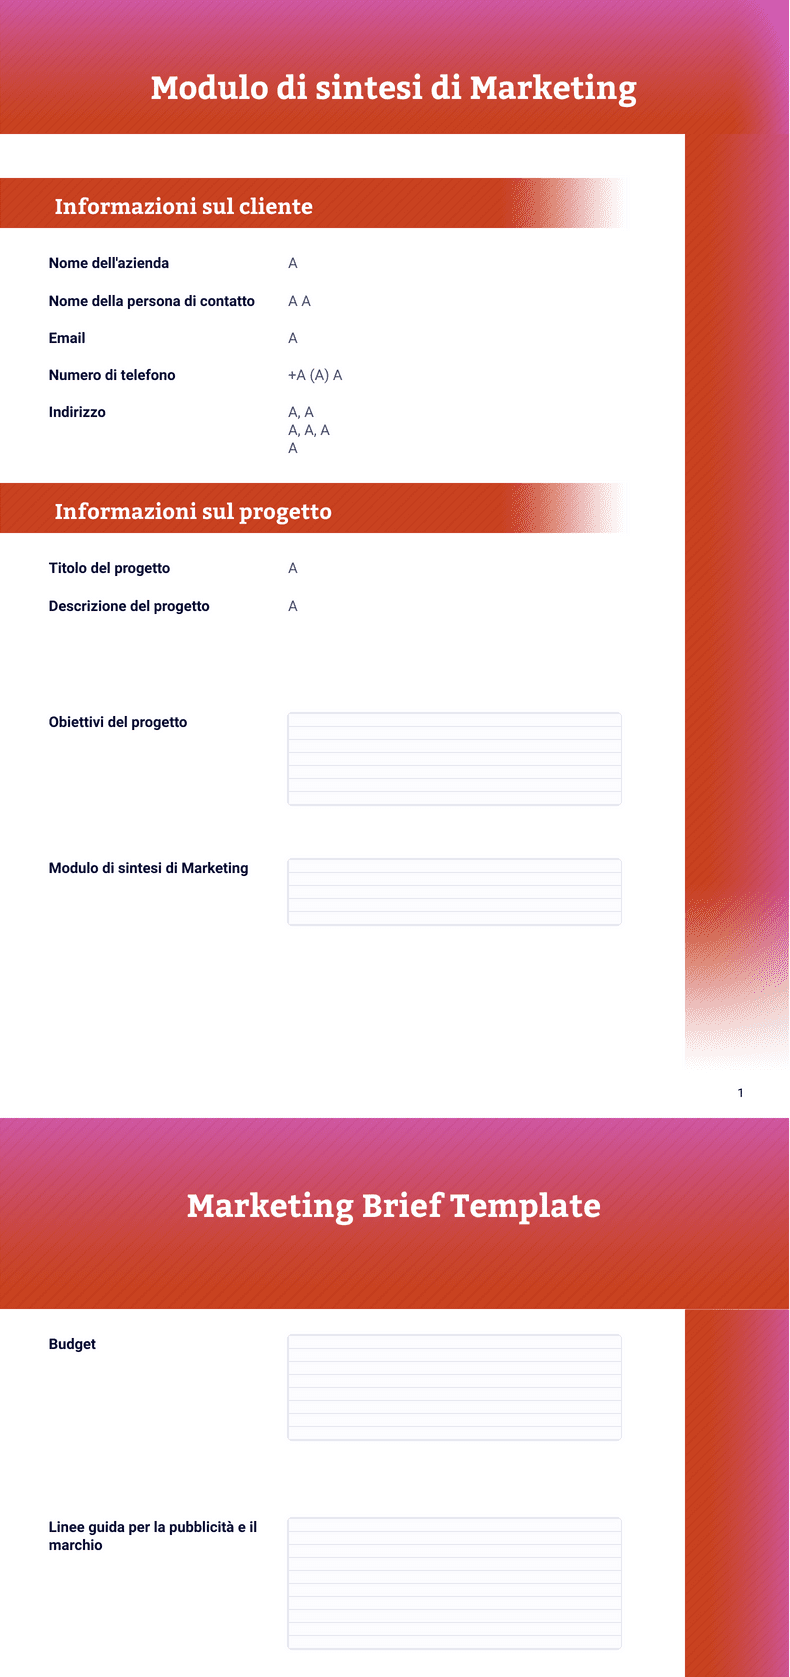 PDF Templates: Modulo di sintesti di Marketing